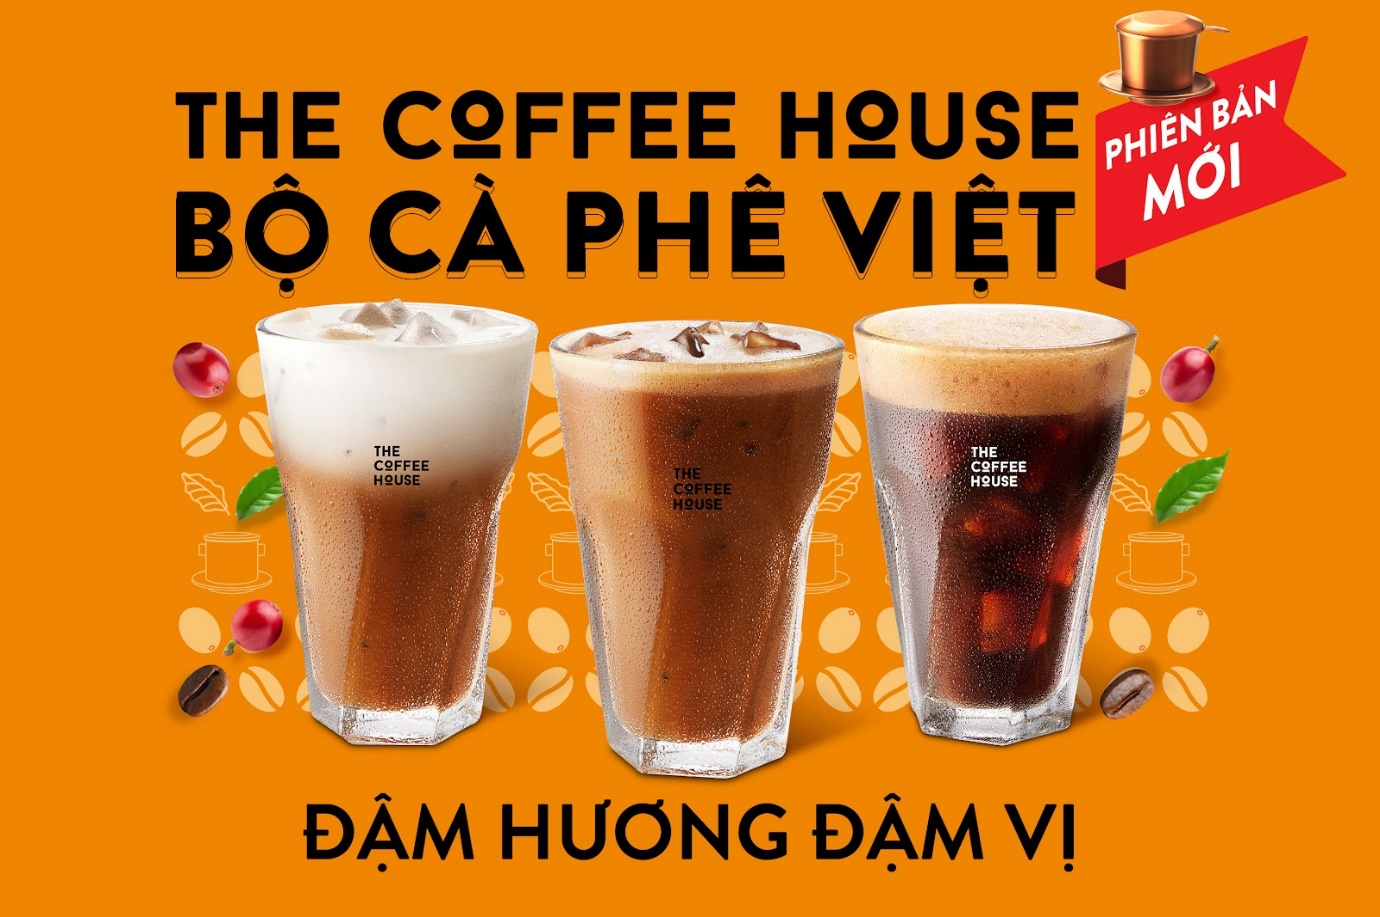 The Coffee House ngày đầu mở bán bộ cà phê Việt đậm đà - Phá kỷ lục với hơn 11K ly cà phê 11K - Ảnh 2.